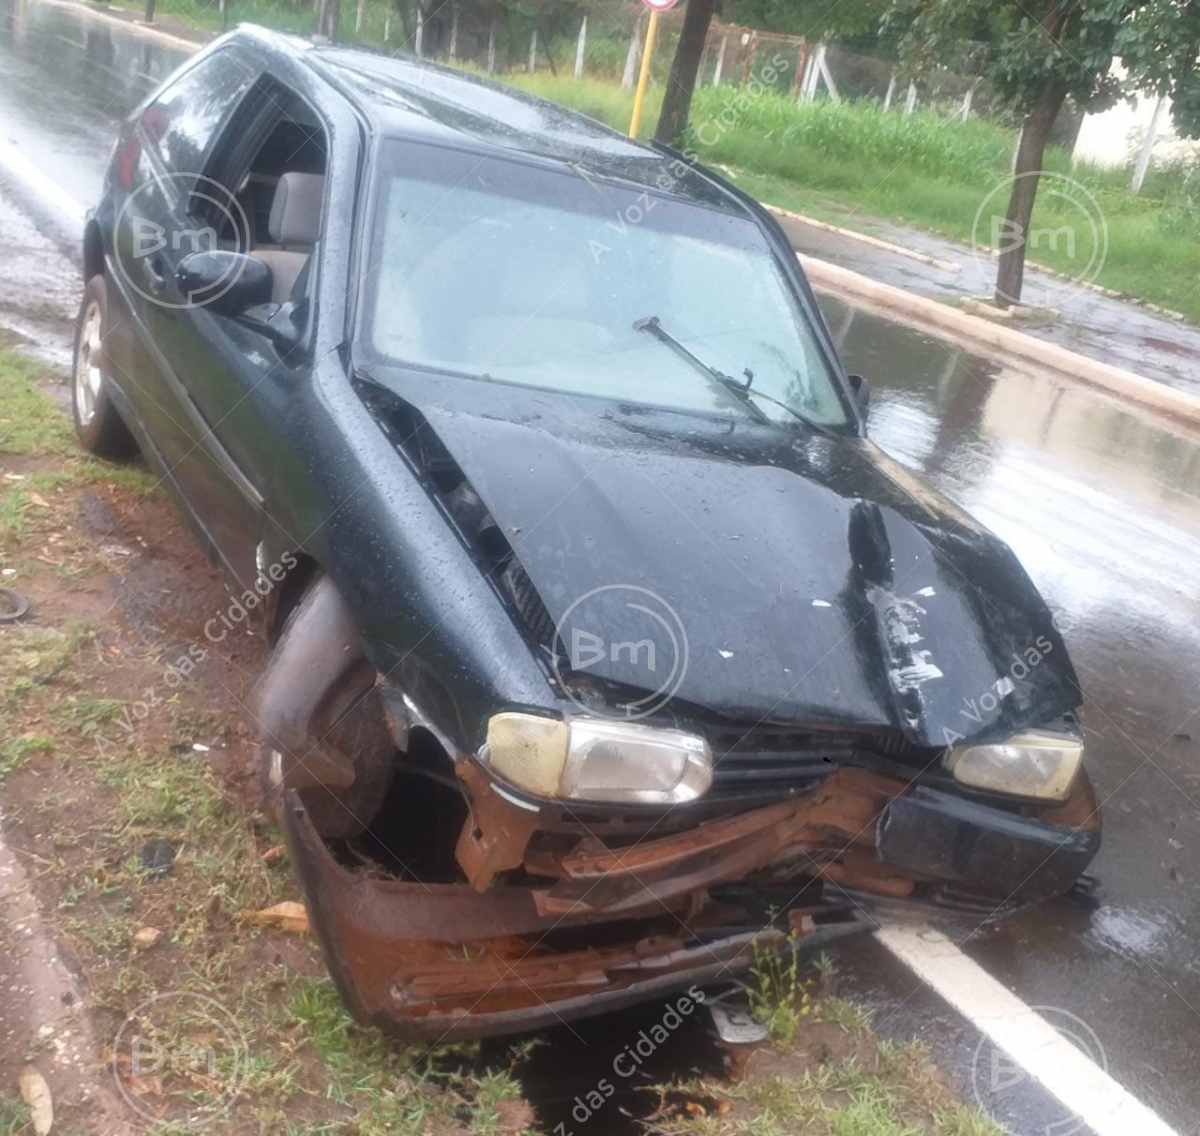 Jales - Motorista perde controle do carro e derruba Palmeira Imperial na Avenida Paulo Marcondes